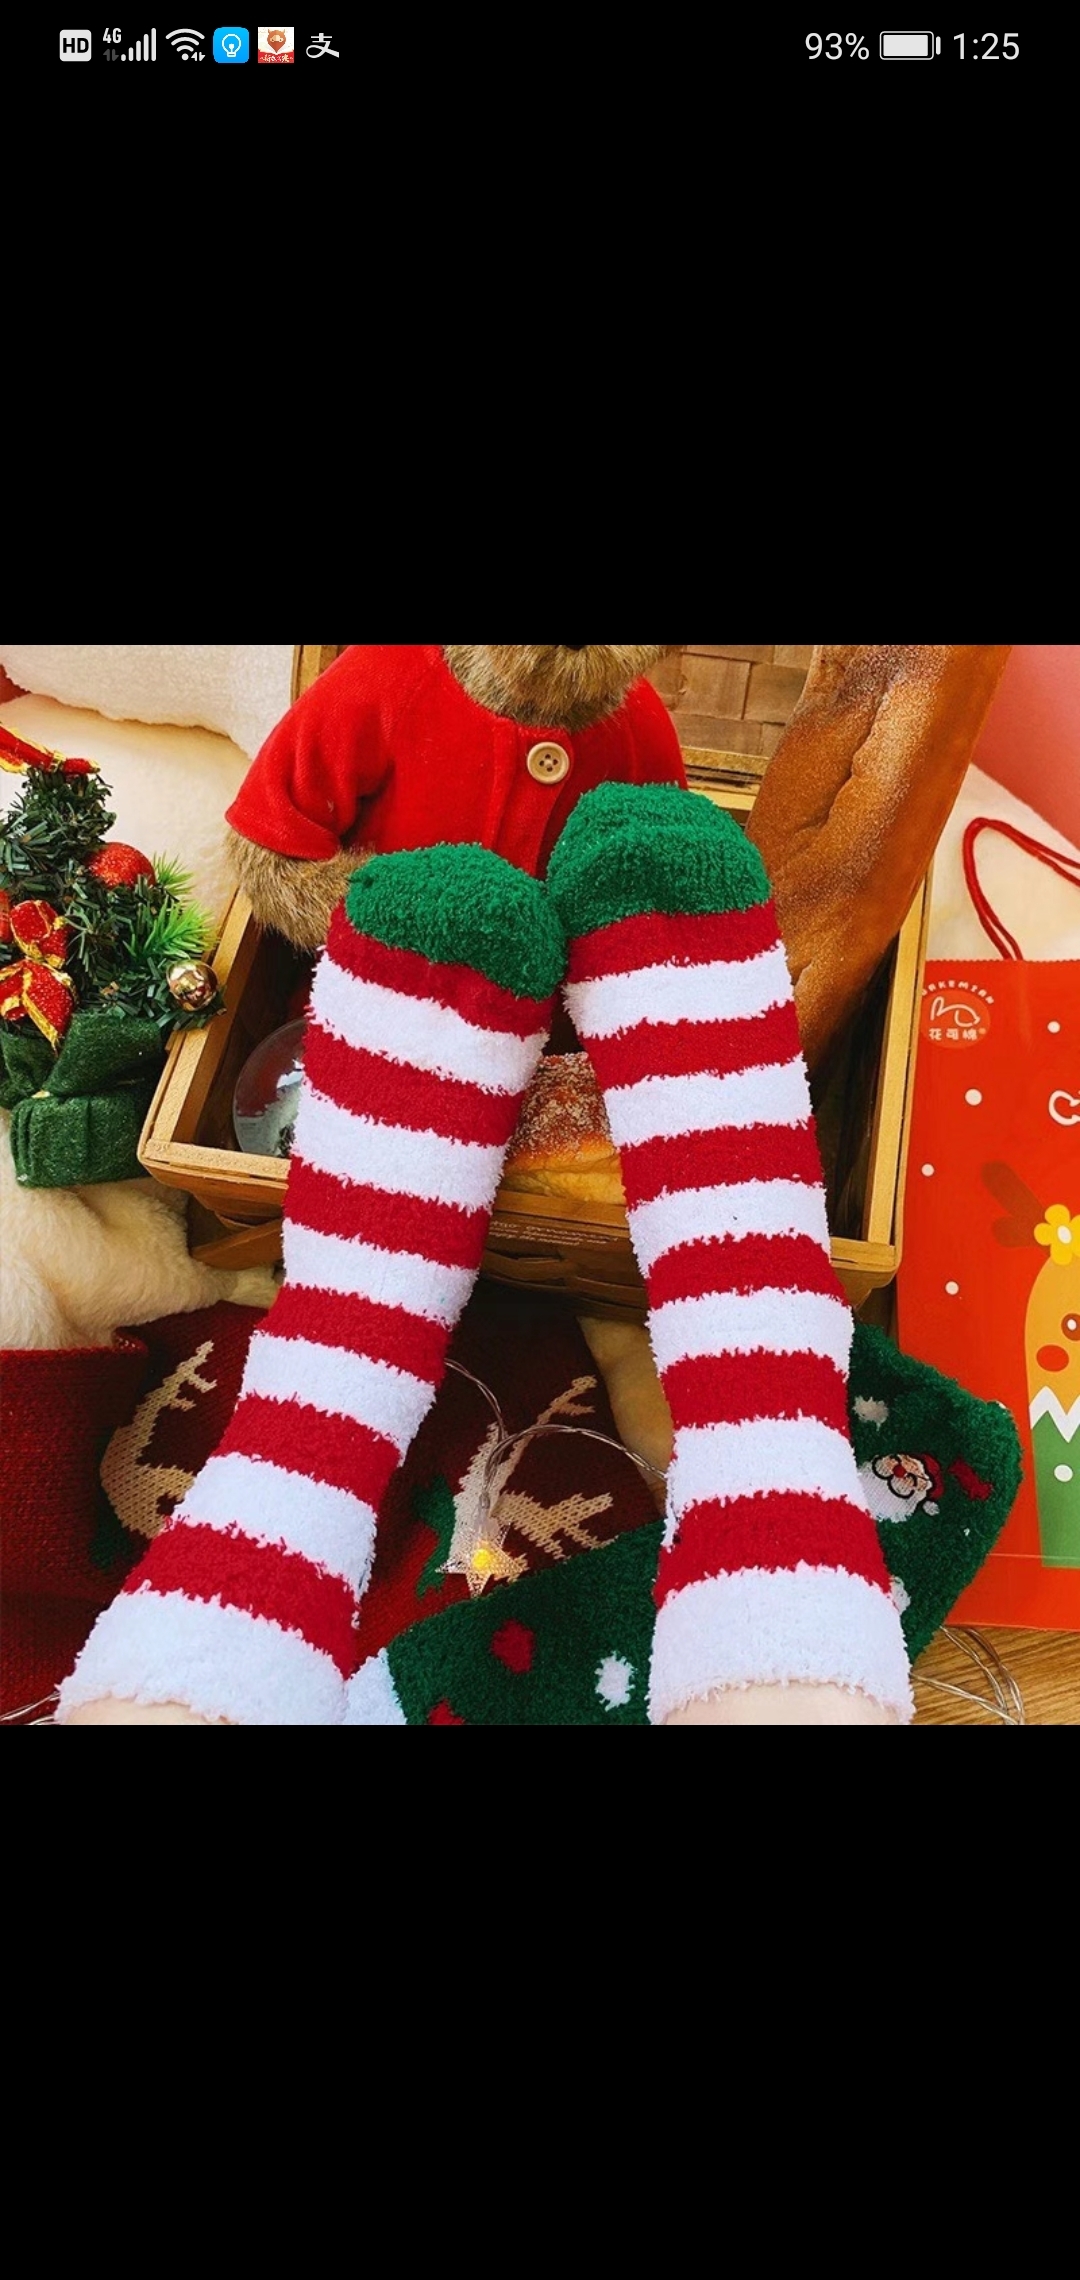    Christmas cozy socks